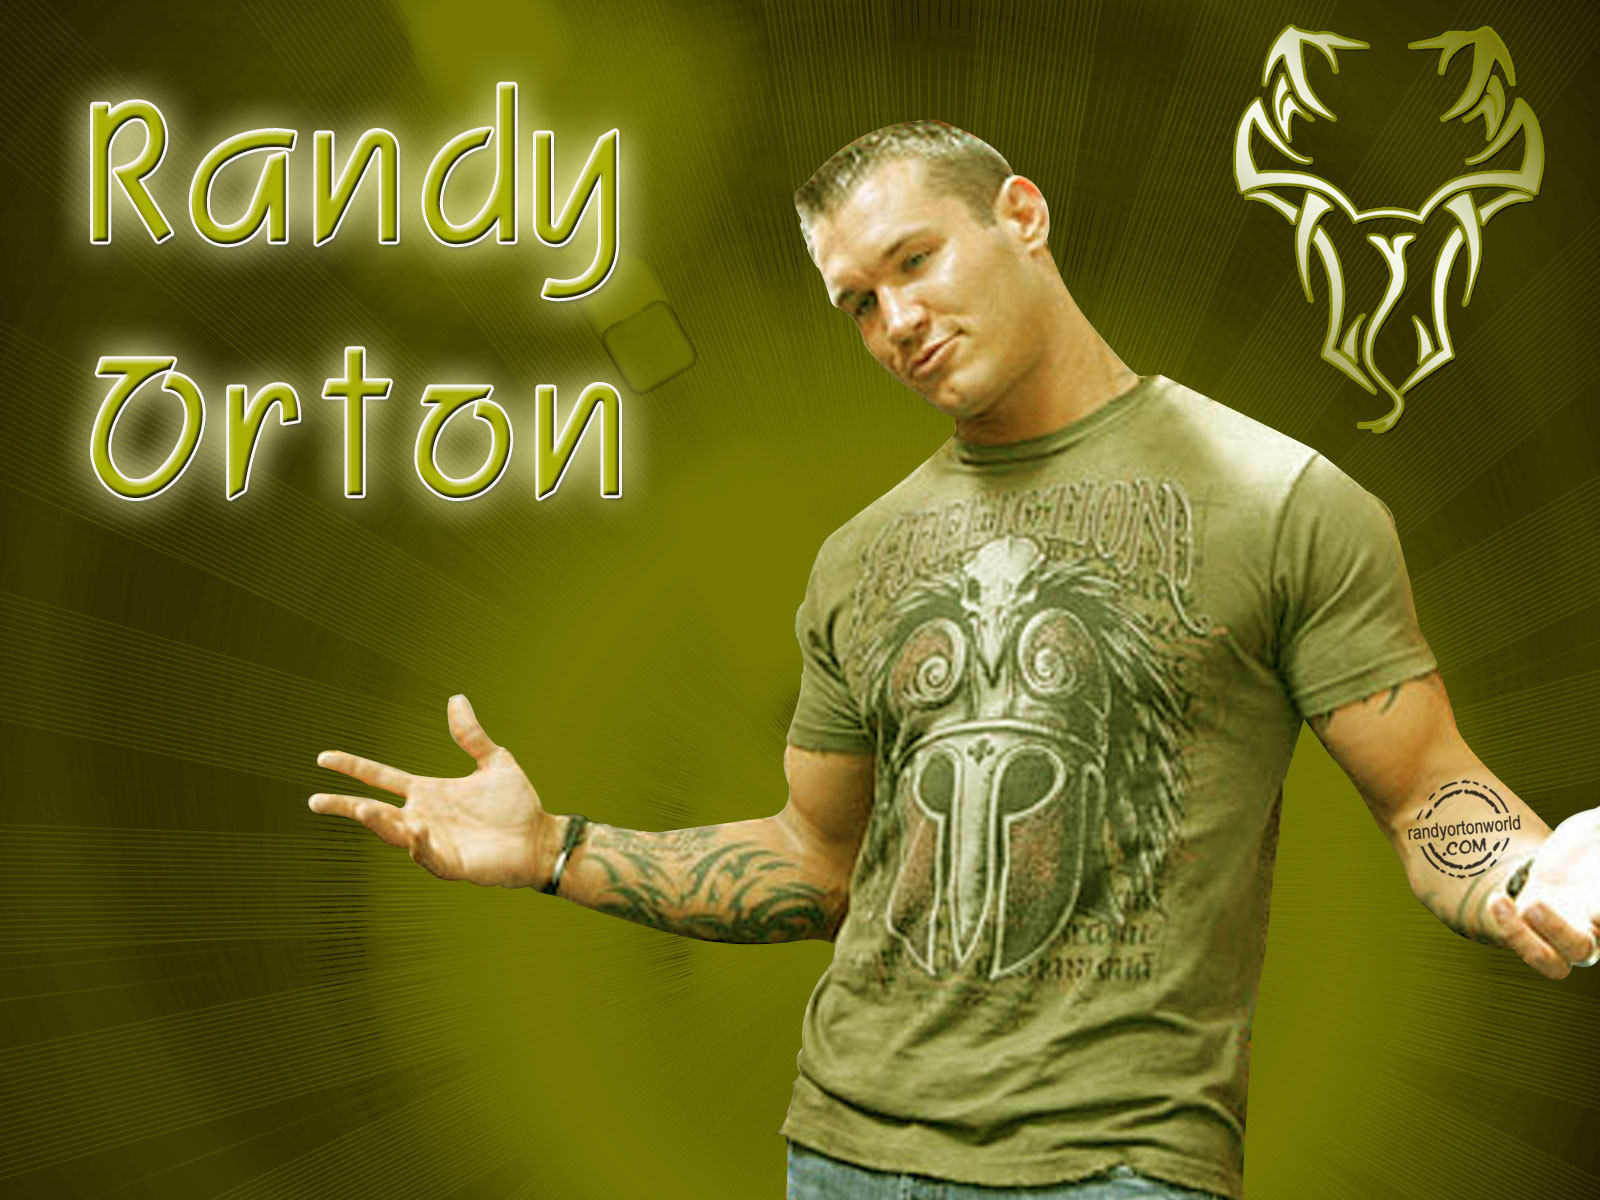 Cool Randy Orton Wallpaper